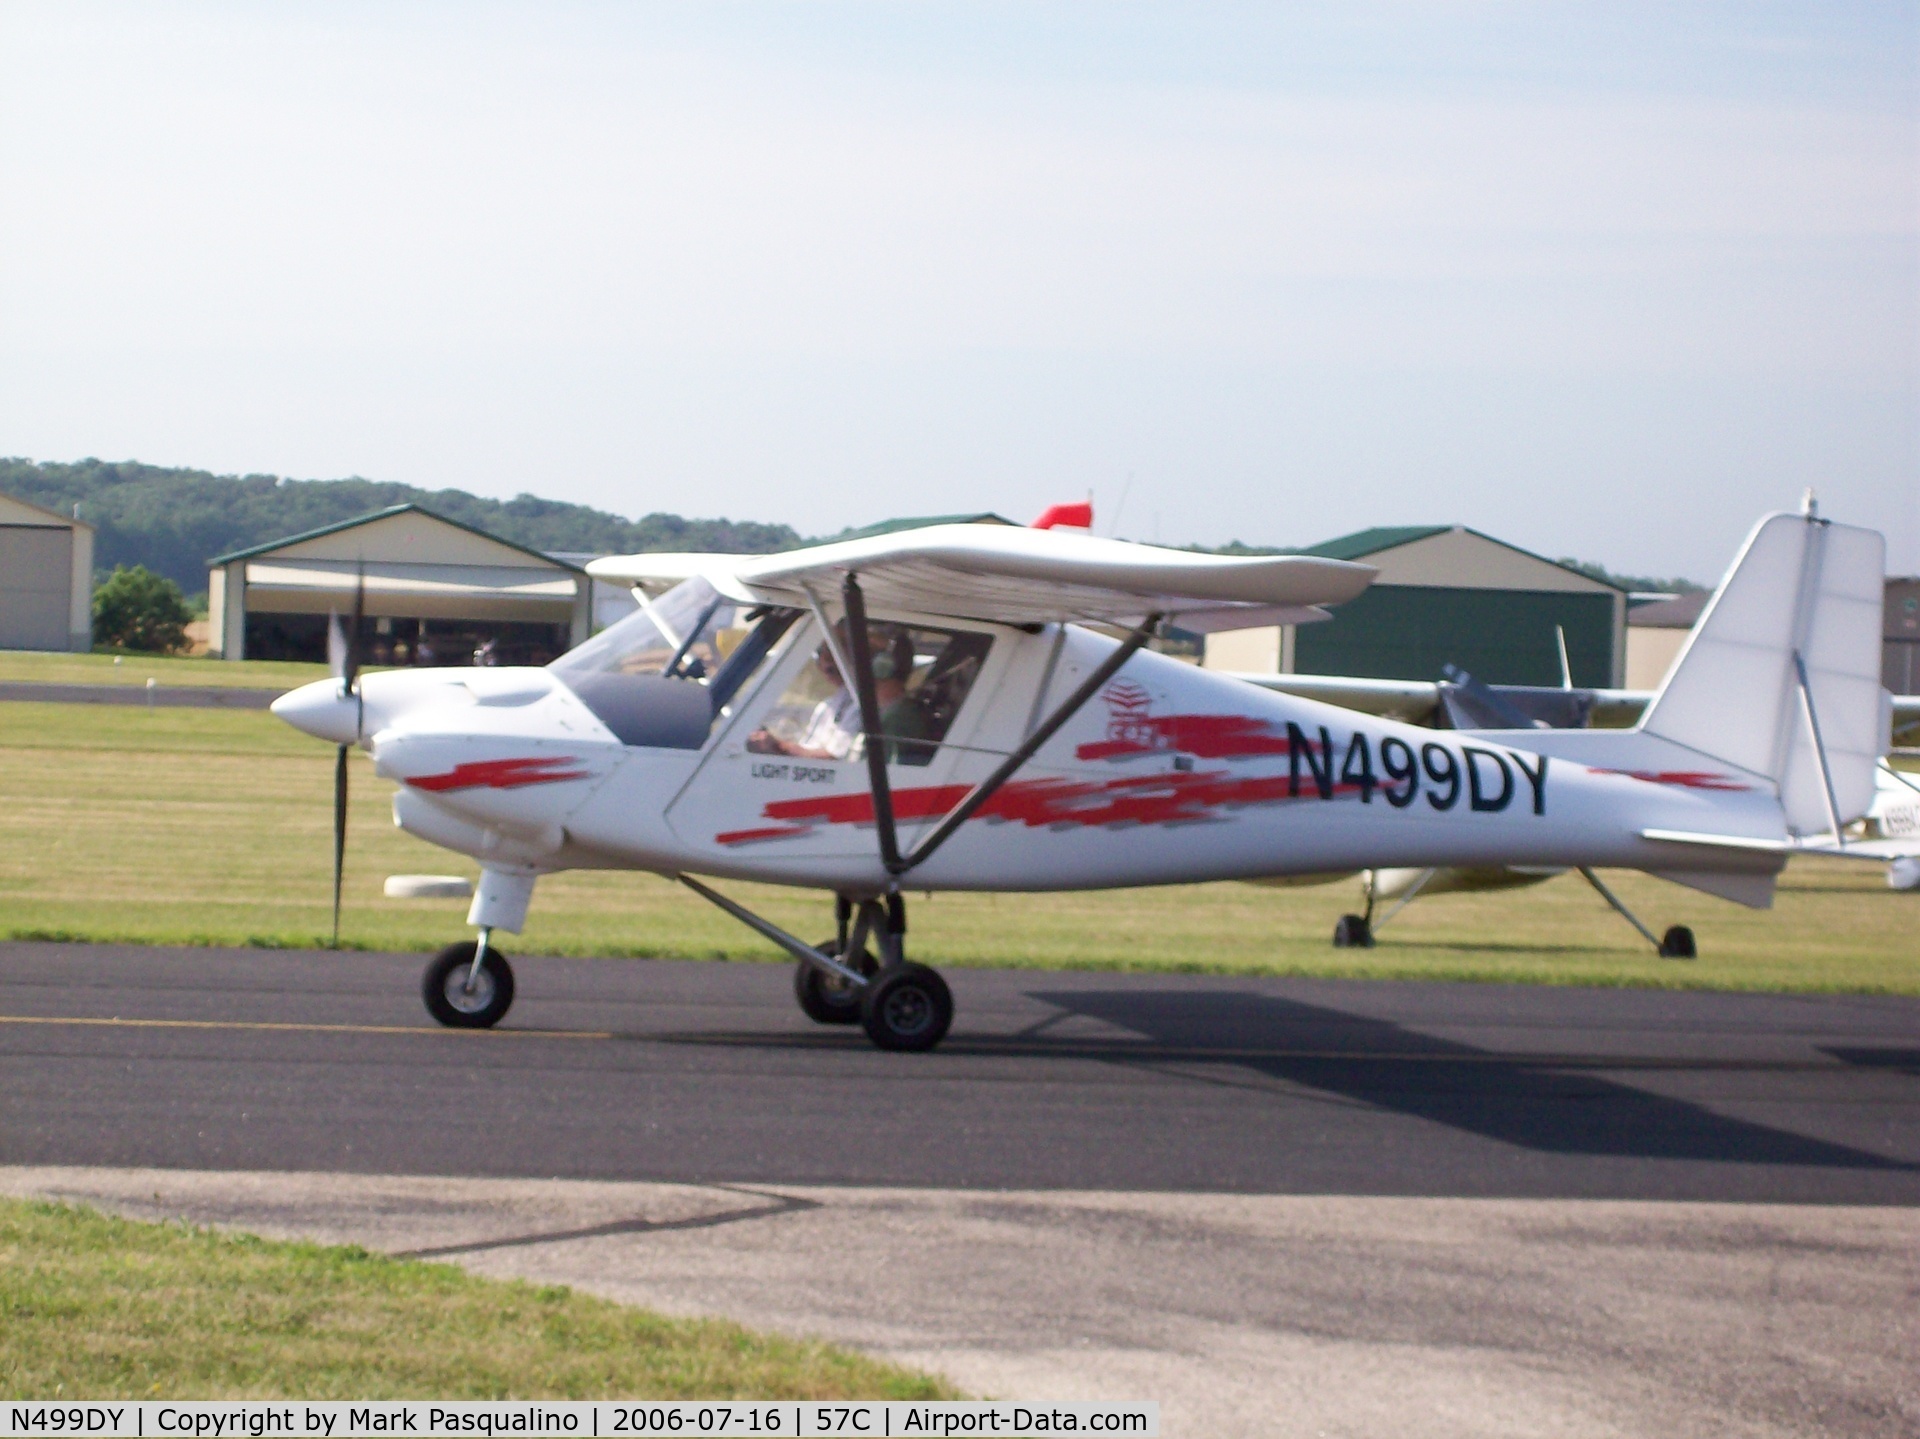 N499DY, 2005 Comco Ikarus C42 C/N 0501-6649, Aerosport  C42